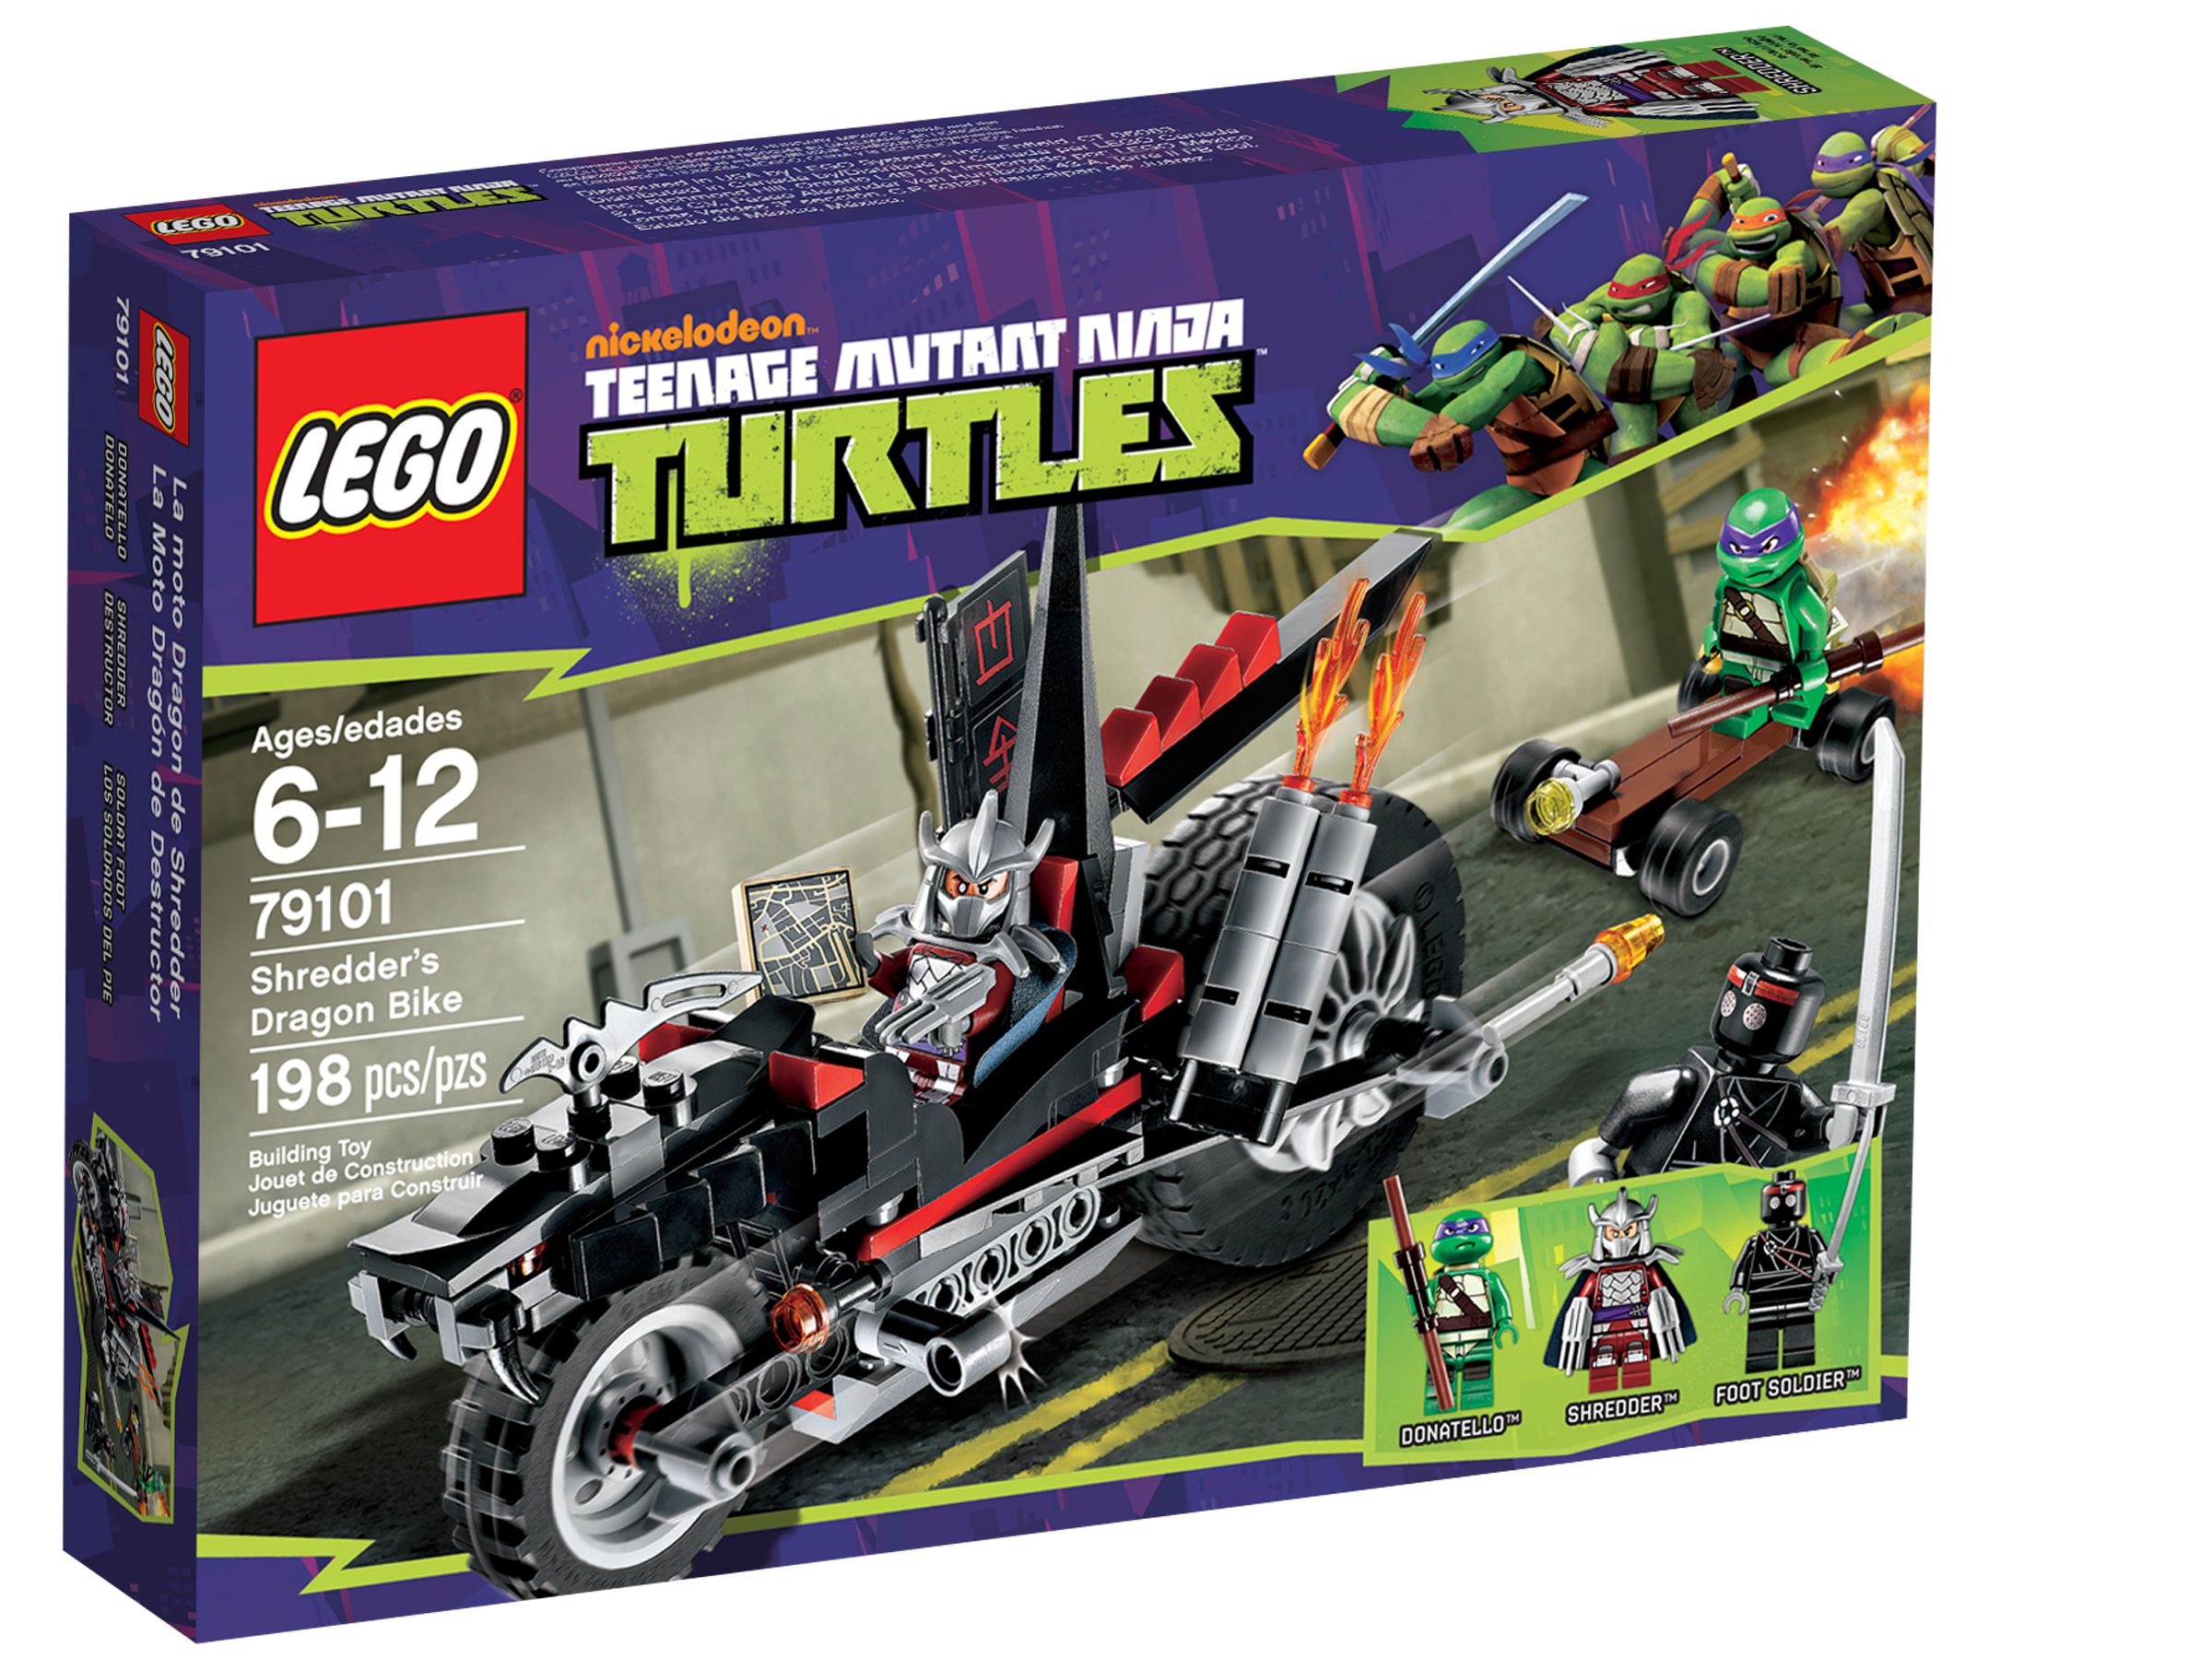 LEGO Teenage Mutant Ninja Turtles 79101 Shredders Turbobike LEGO_79101_alt1.jpg